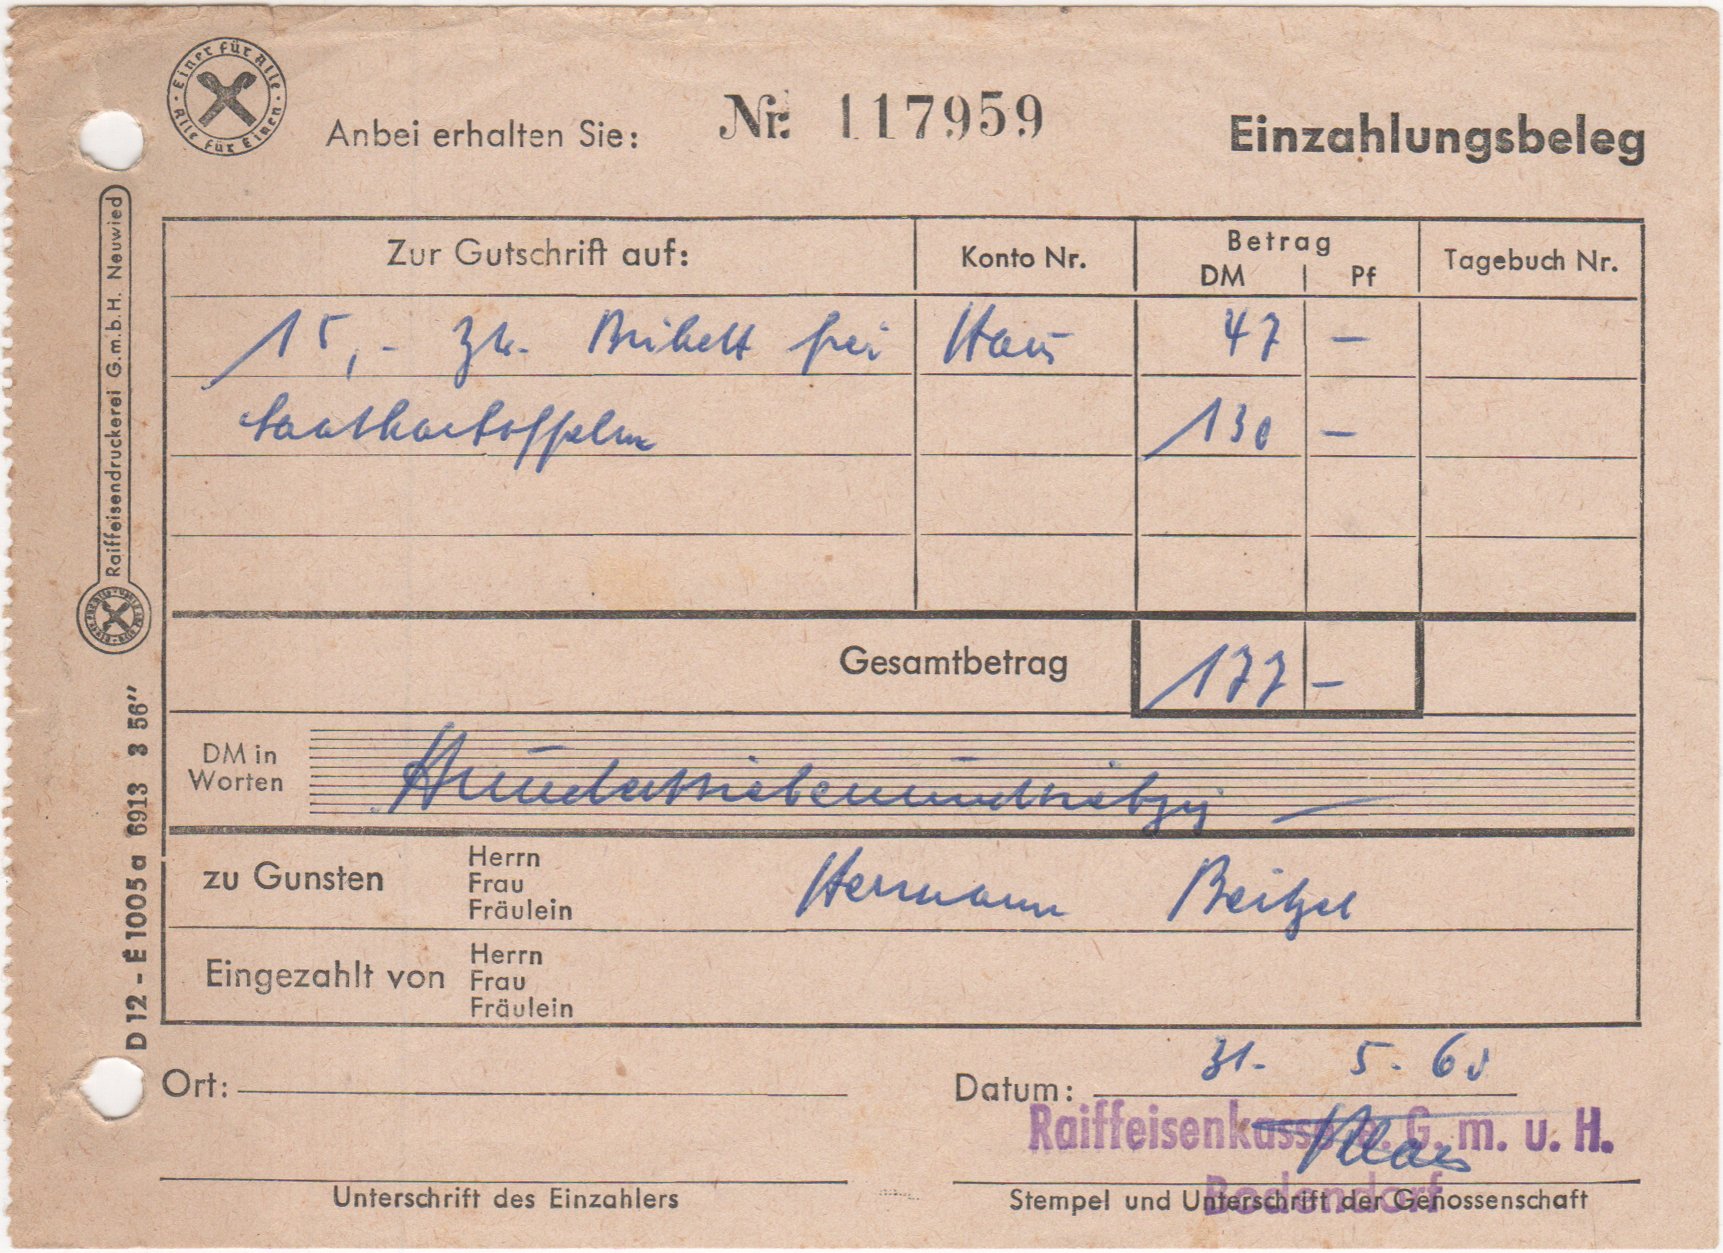 Einzahlungsbeleg der Raiffeisenkasse G.m.u.H. Bodendorf vom 31.5.1960 (Heimatarchiv Bad Bodendorf CC BY-NC-SA)